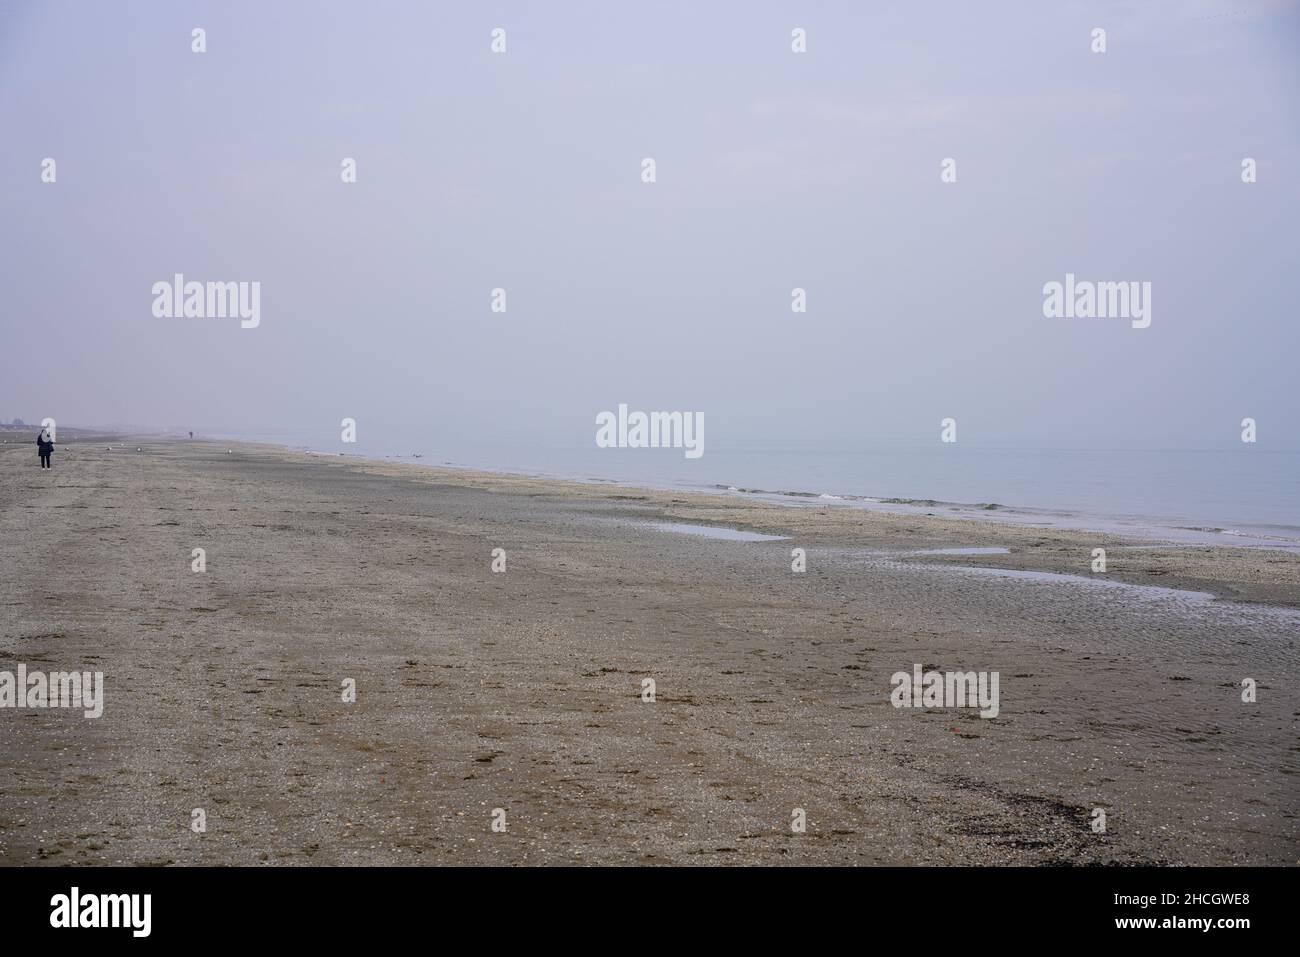 Una camminatrice solitaria sulla spiaggia sabbiosa dell'Isola del Lido, Venezia. Foto Stock